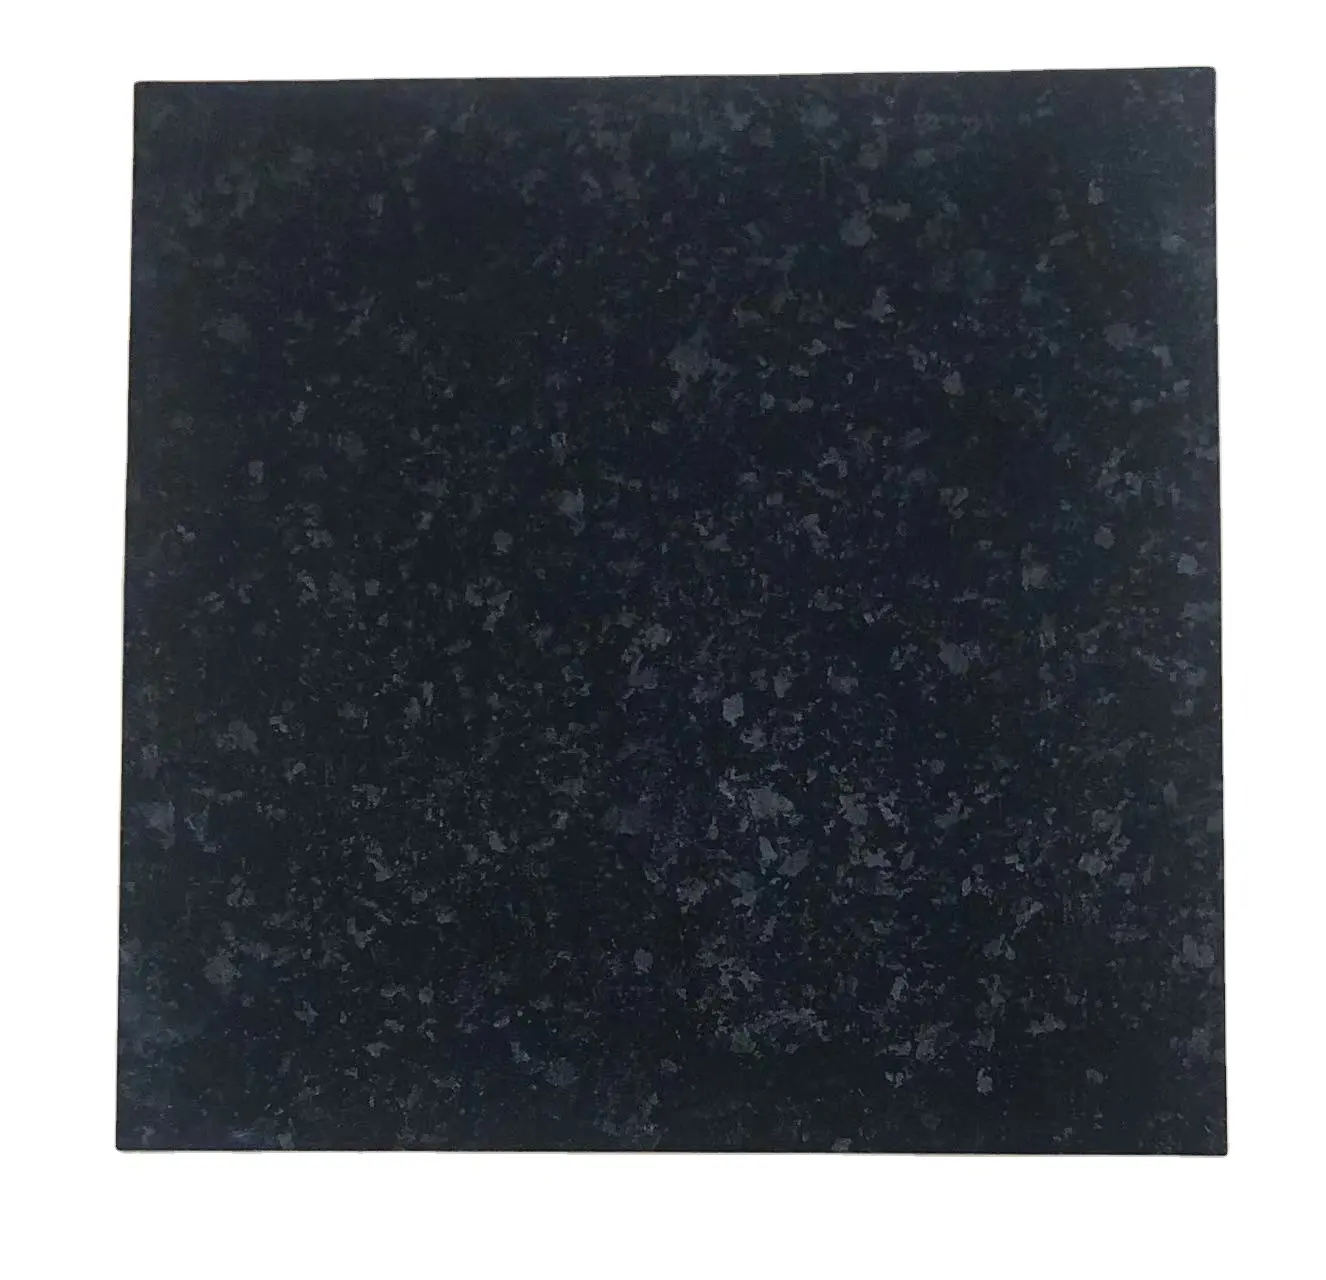 Angola Đen Granite Glossy sàn đá cẩm thạch gạch đánh bóng tráng men porcelanto sứ đen gốm gạch